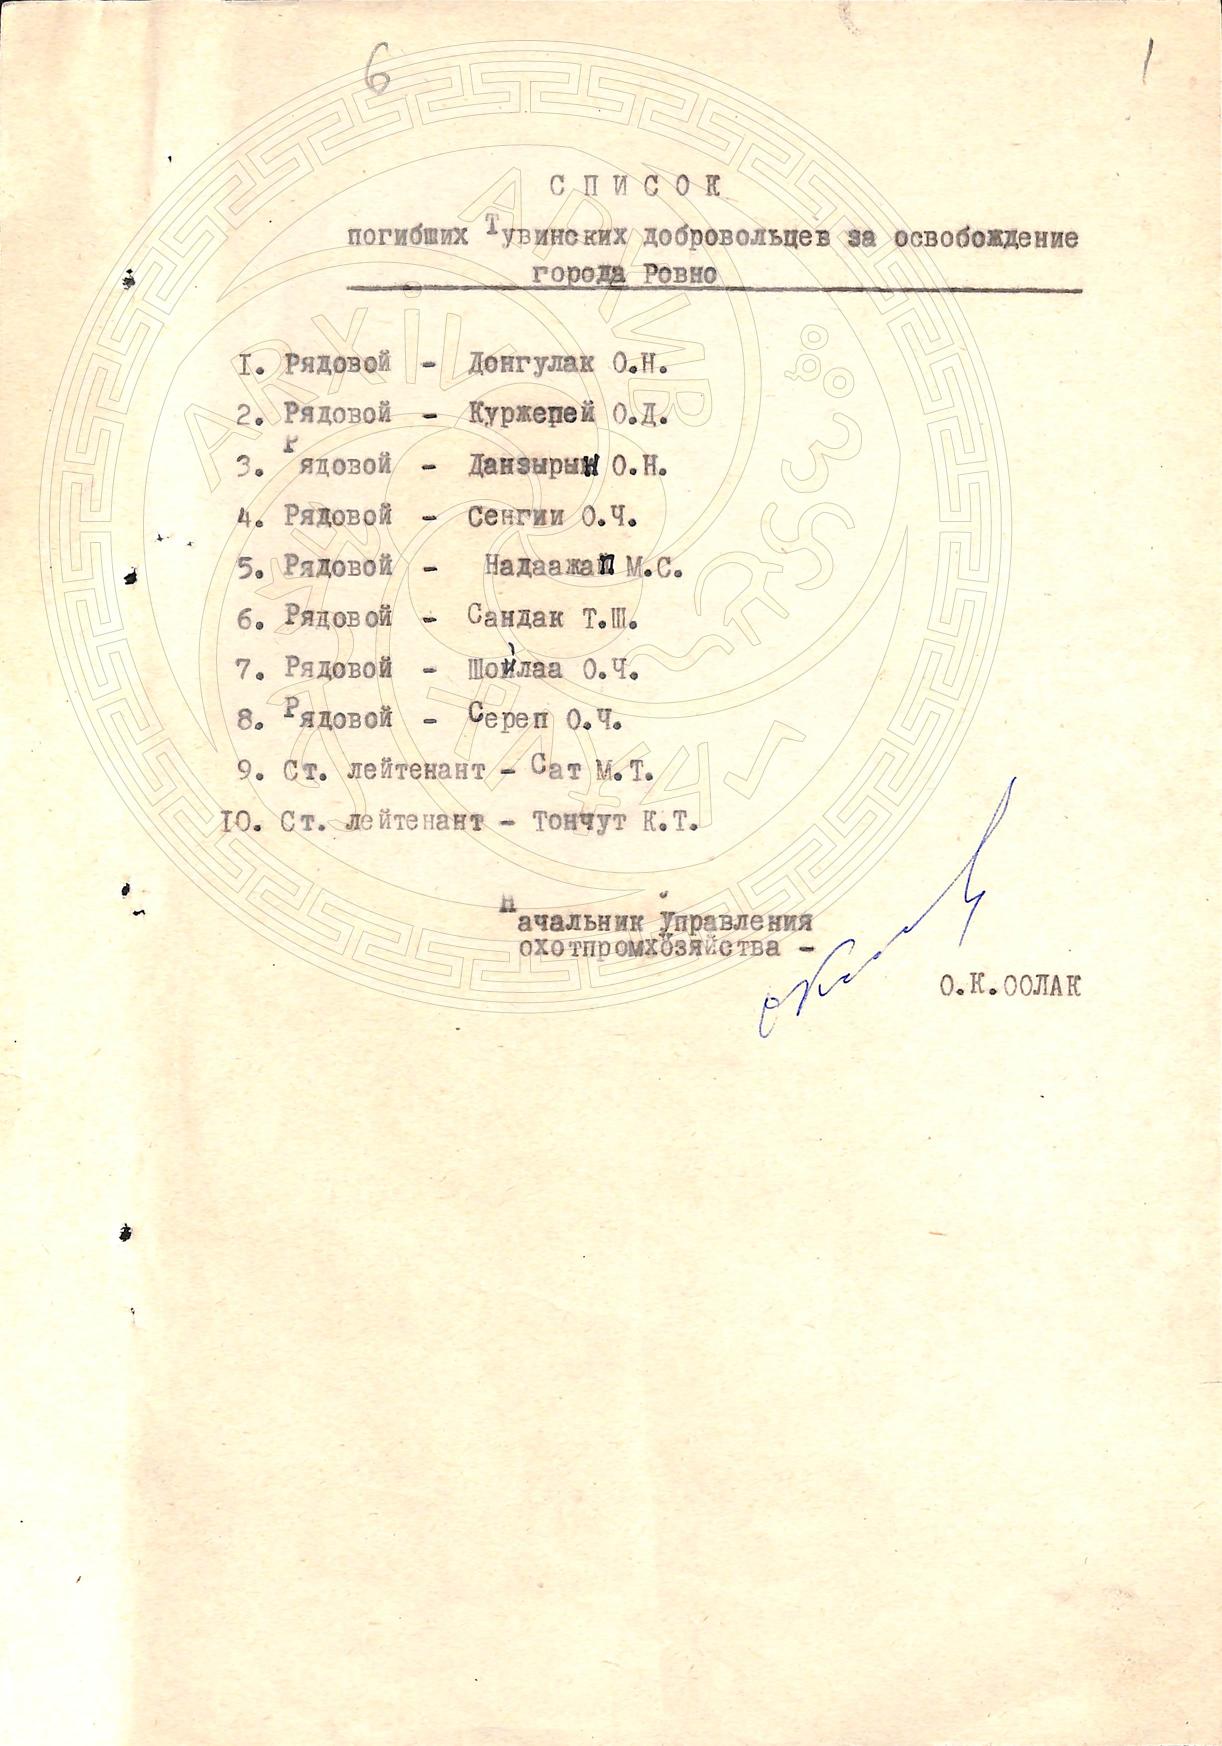 Списки погибших тувинцев-добровольцев при освобожеднии г. Дубно, г.Ровно